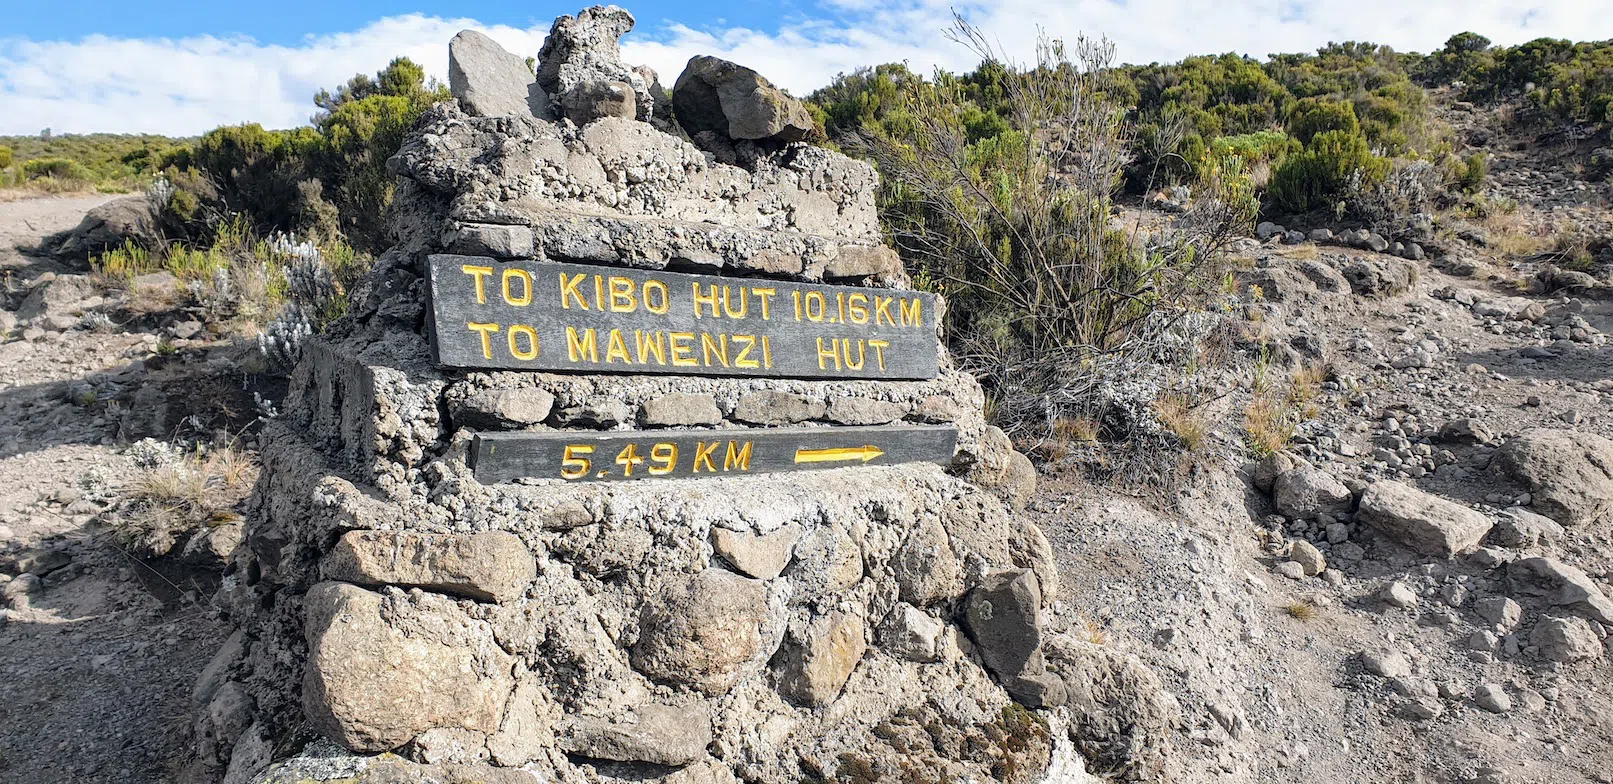 Kibo Trail